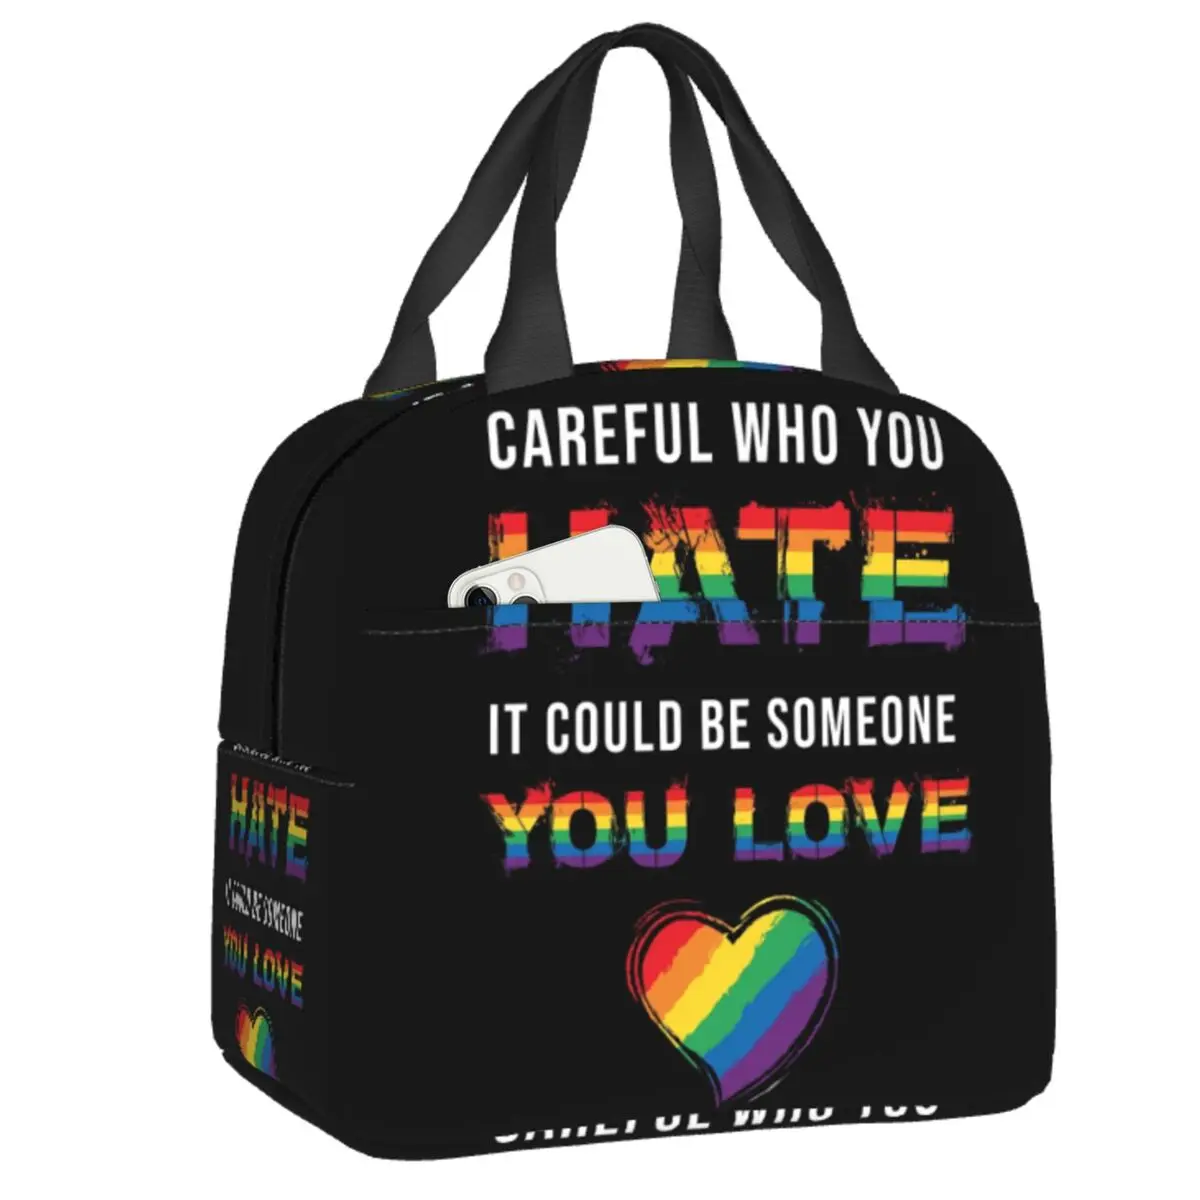 

ЛГБТ Hate You Love Изолированные сумки для ланча для женщин геев лесбиянок гордость GLBT портативный охладитель термальный бэнто коробка для работ...